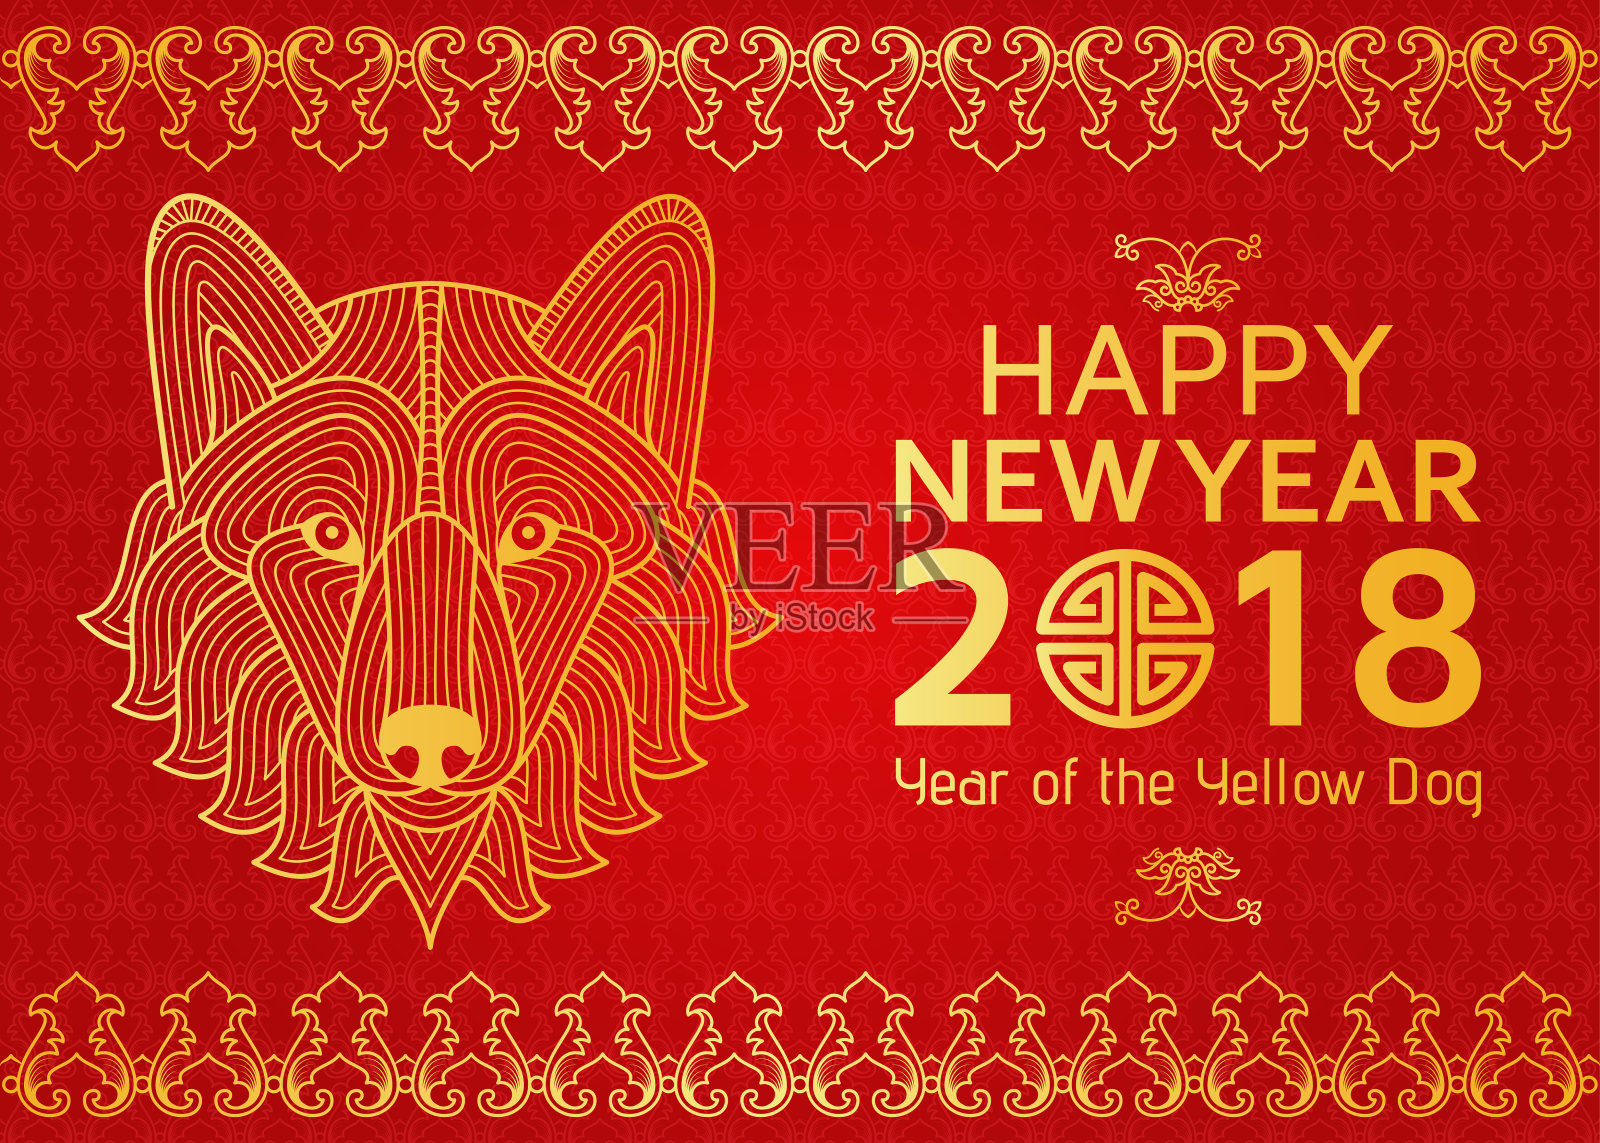 中国新年的背景与创意风格的狗设计模板素材